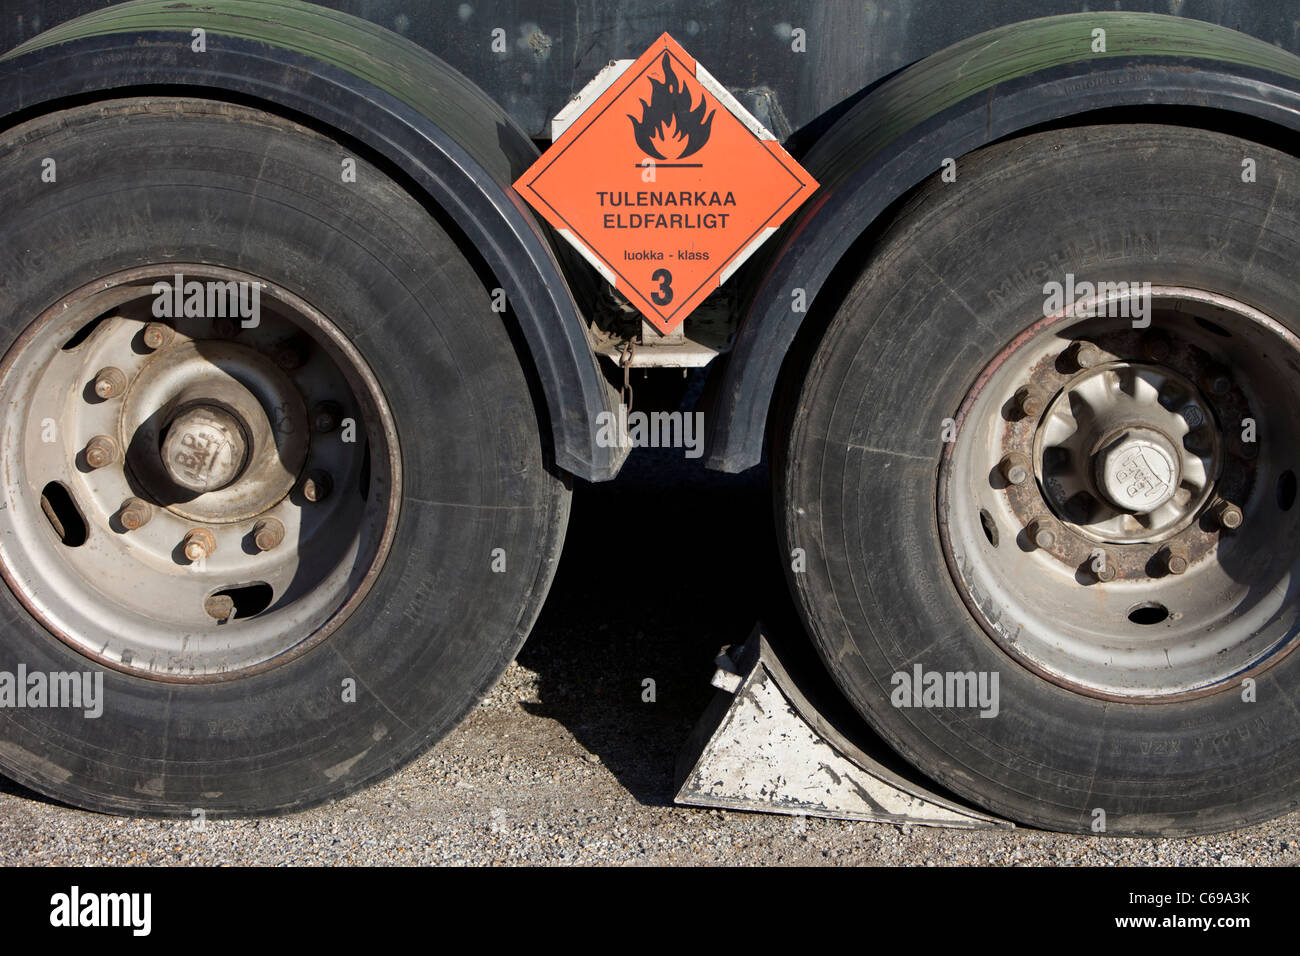 Reifenstopper unter LKW Reifen brennbar Warnschild, Finnland  Stockfotografie - Alamy